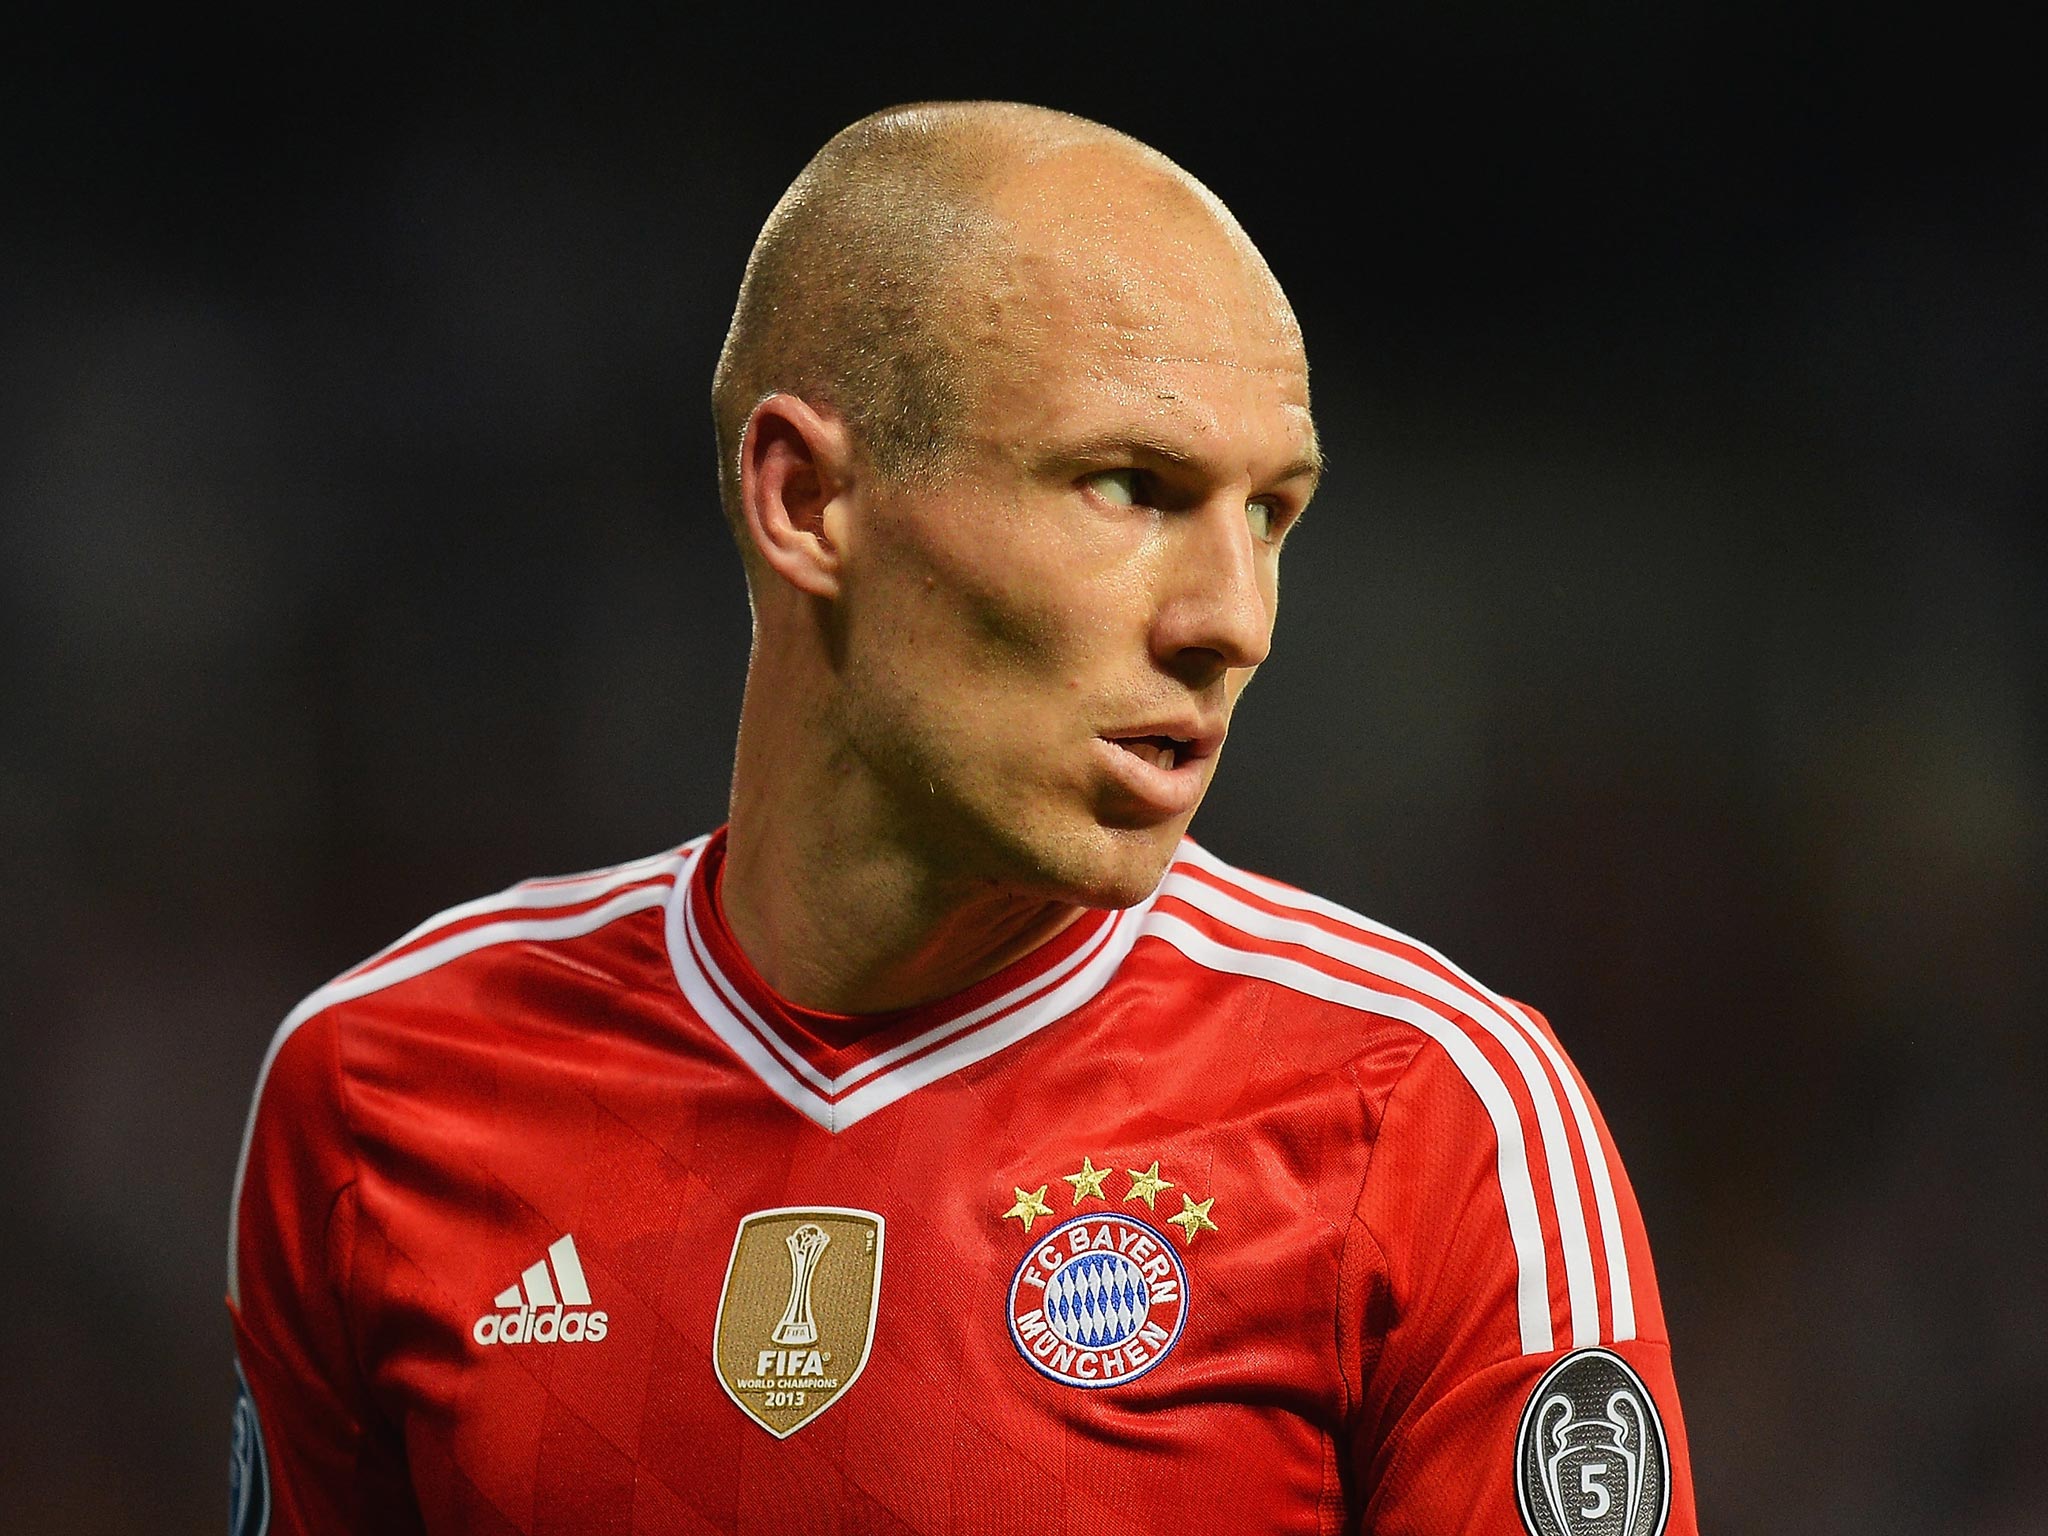 Bayern Munich midfielder Arjen Robben has interested Manchester United